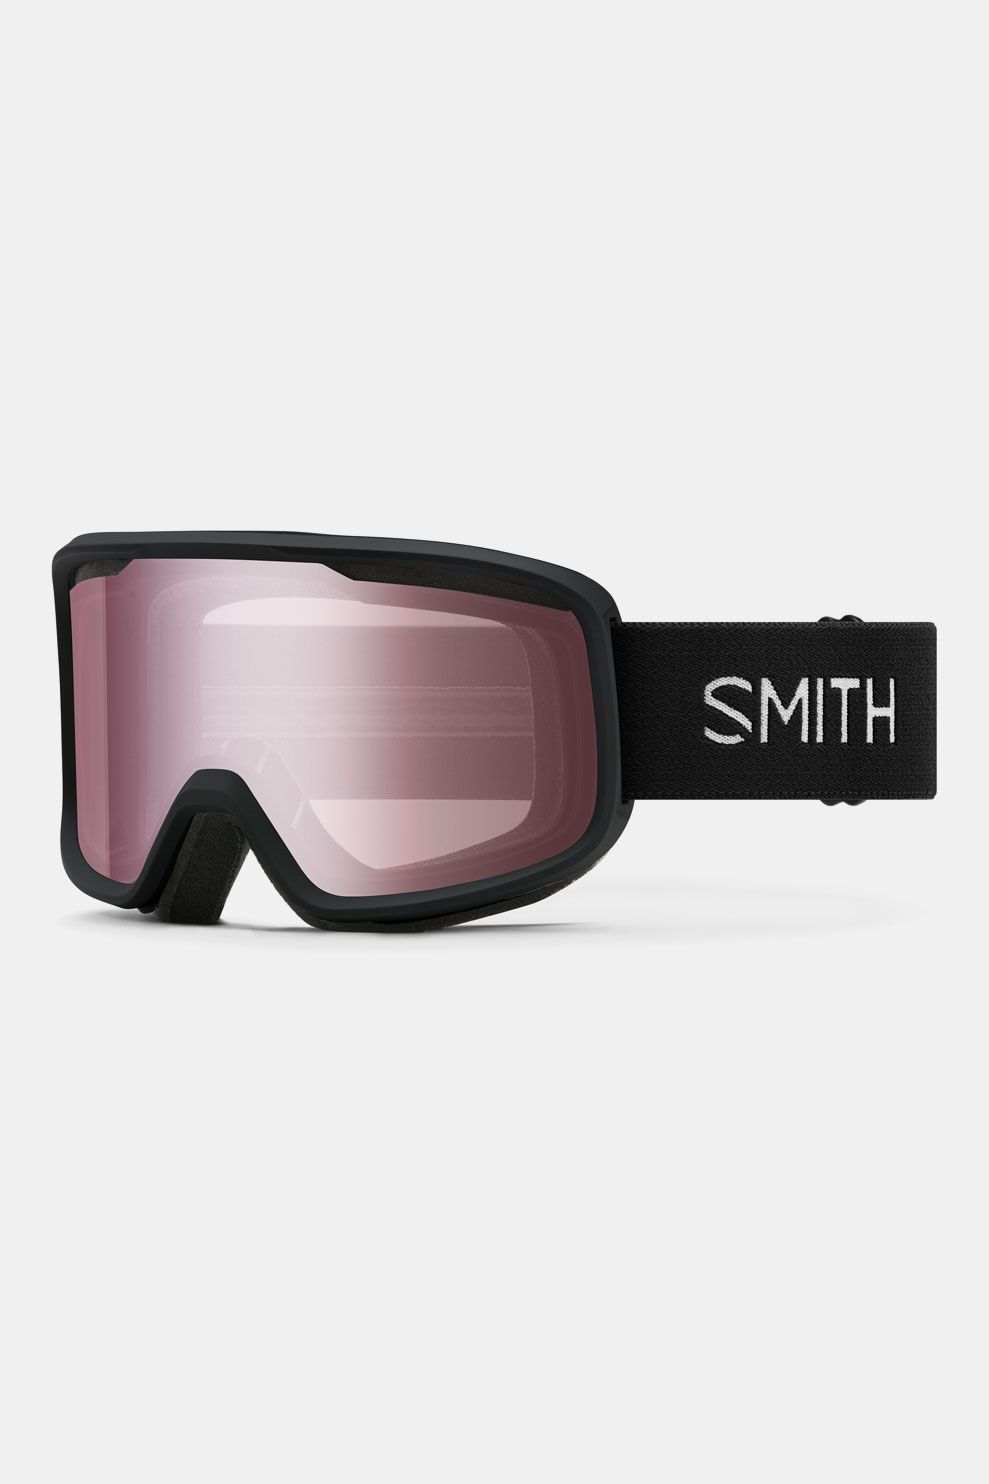 Smith Optics Smith Frontier Skibril/Lichtrood - Zwart